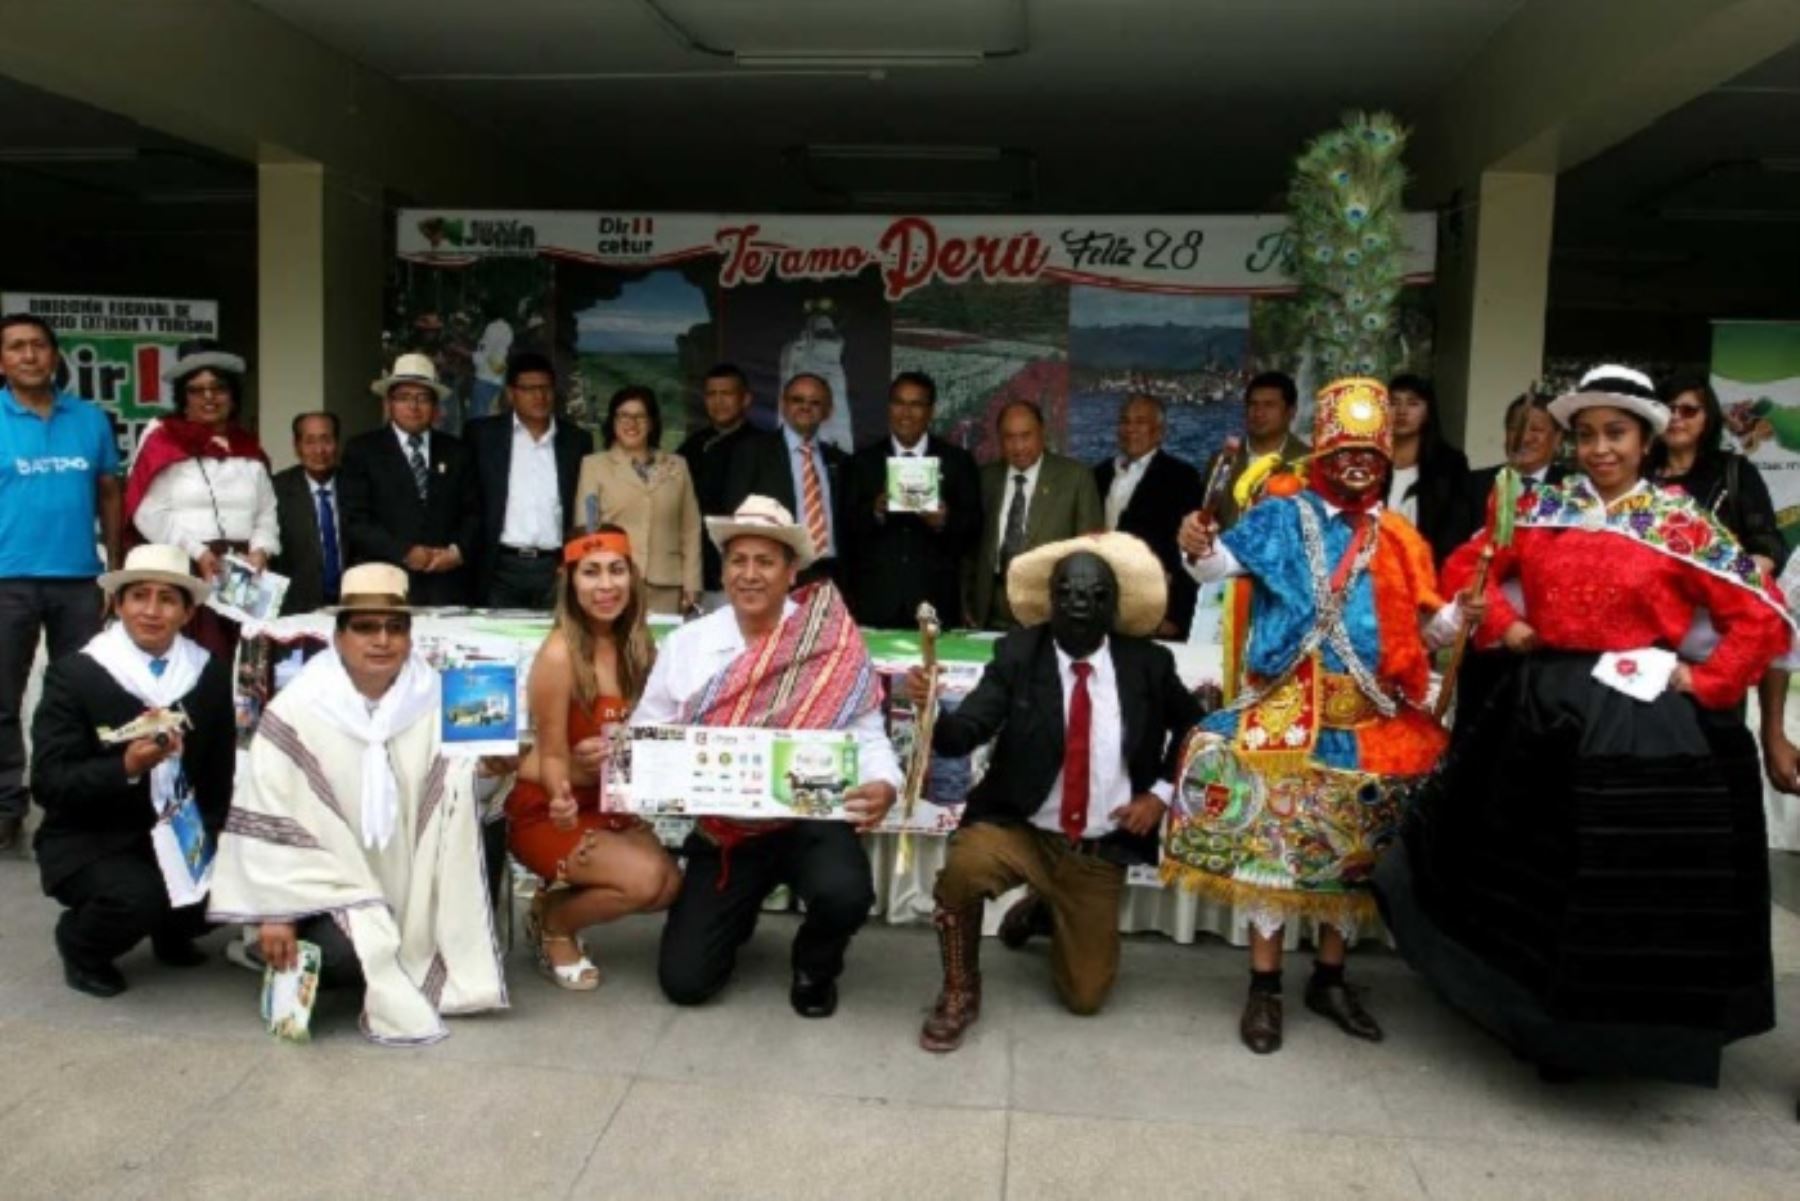 Las autoridades de Junín se han unido para organizar diversas actividades y atraer a un mayor número de visitantes durante el feriado largo por Fiestas Patrias, a fin de consolidar el posicionamiento de dicha región como el primer destino del turismo interno en el Perú.